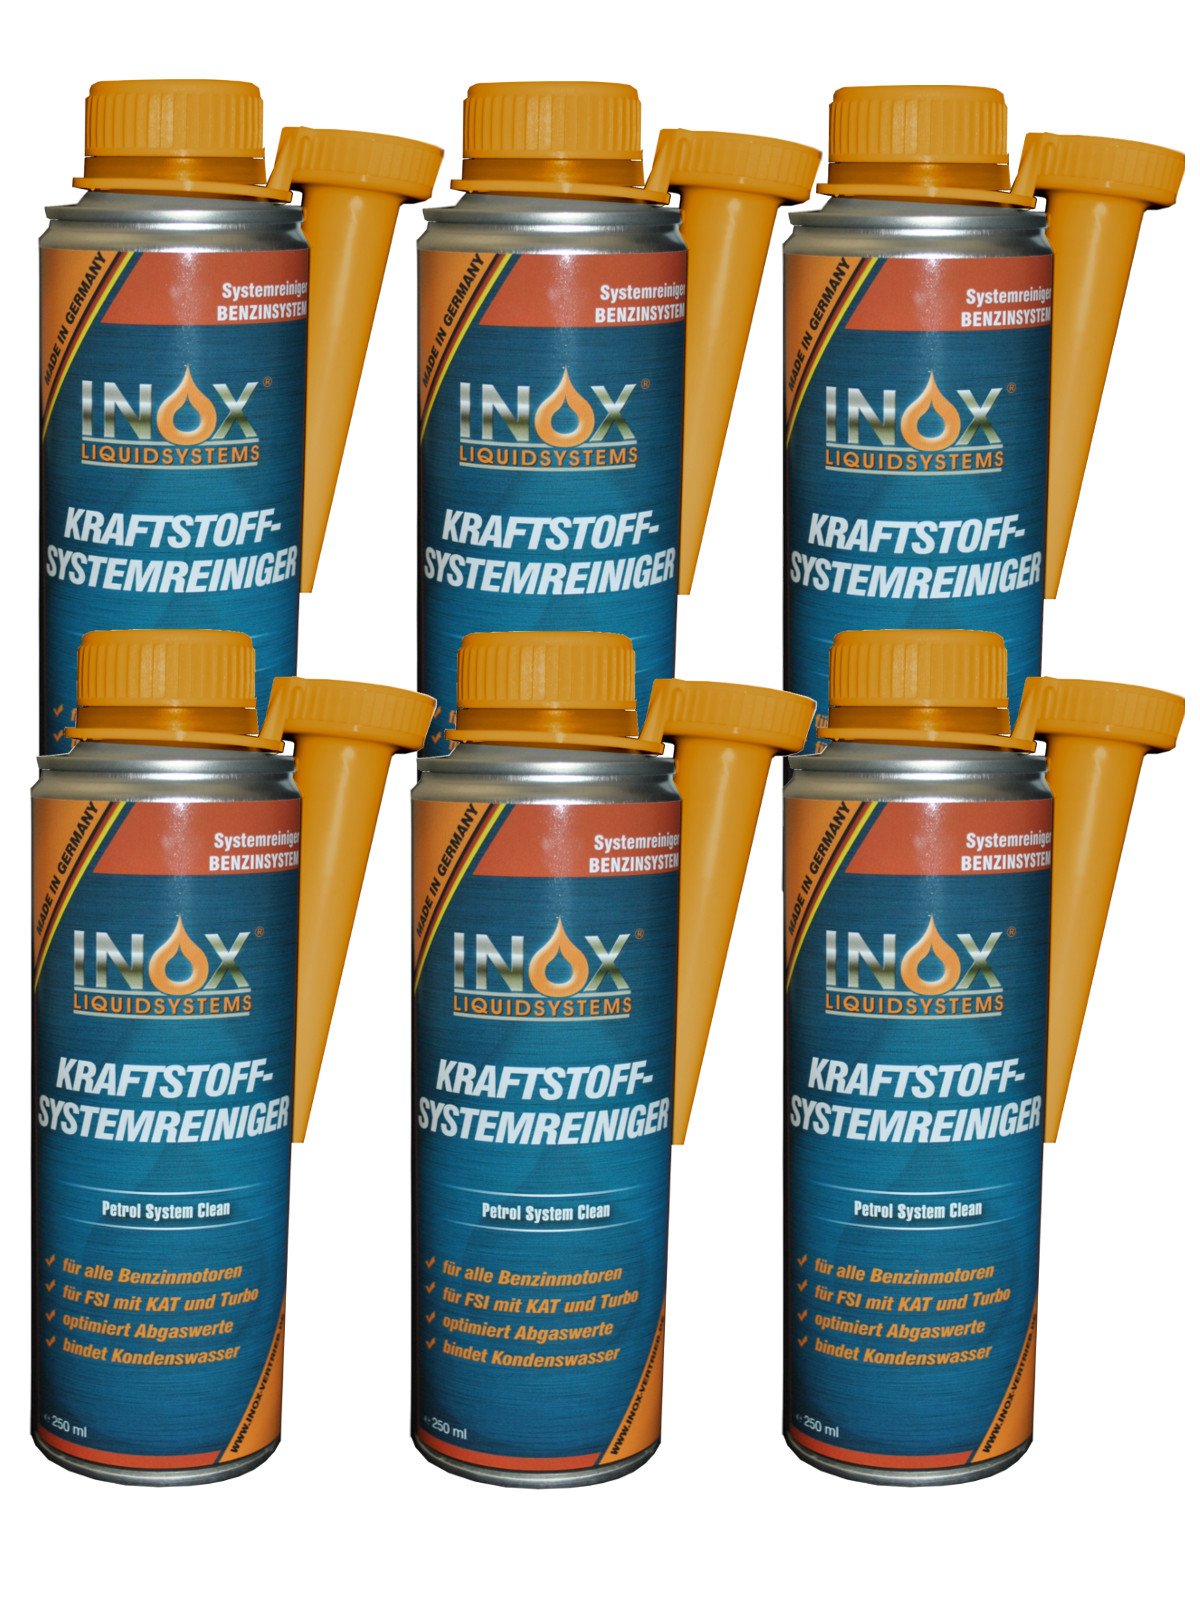 INOX® Kraftstoffsystem Reiniger, 6 x 250ml - Additiv für alle Benzinmotoren entfernt Verschmutzungen und erhöht Lebensdauer von Motoren